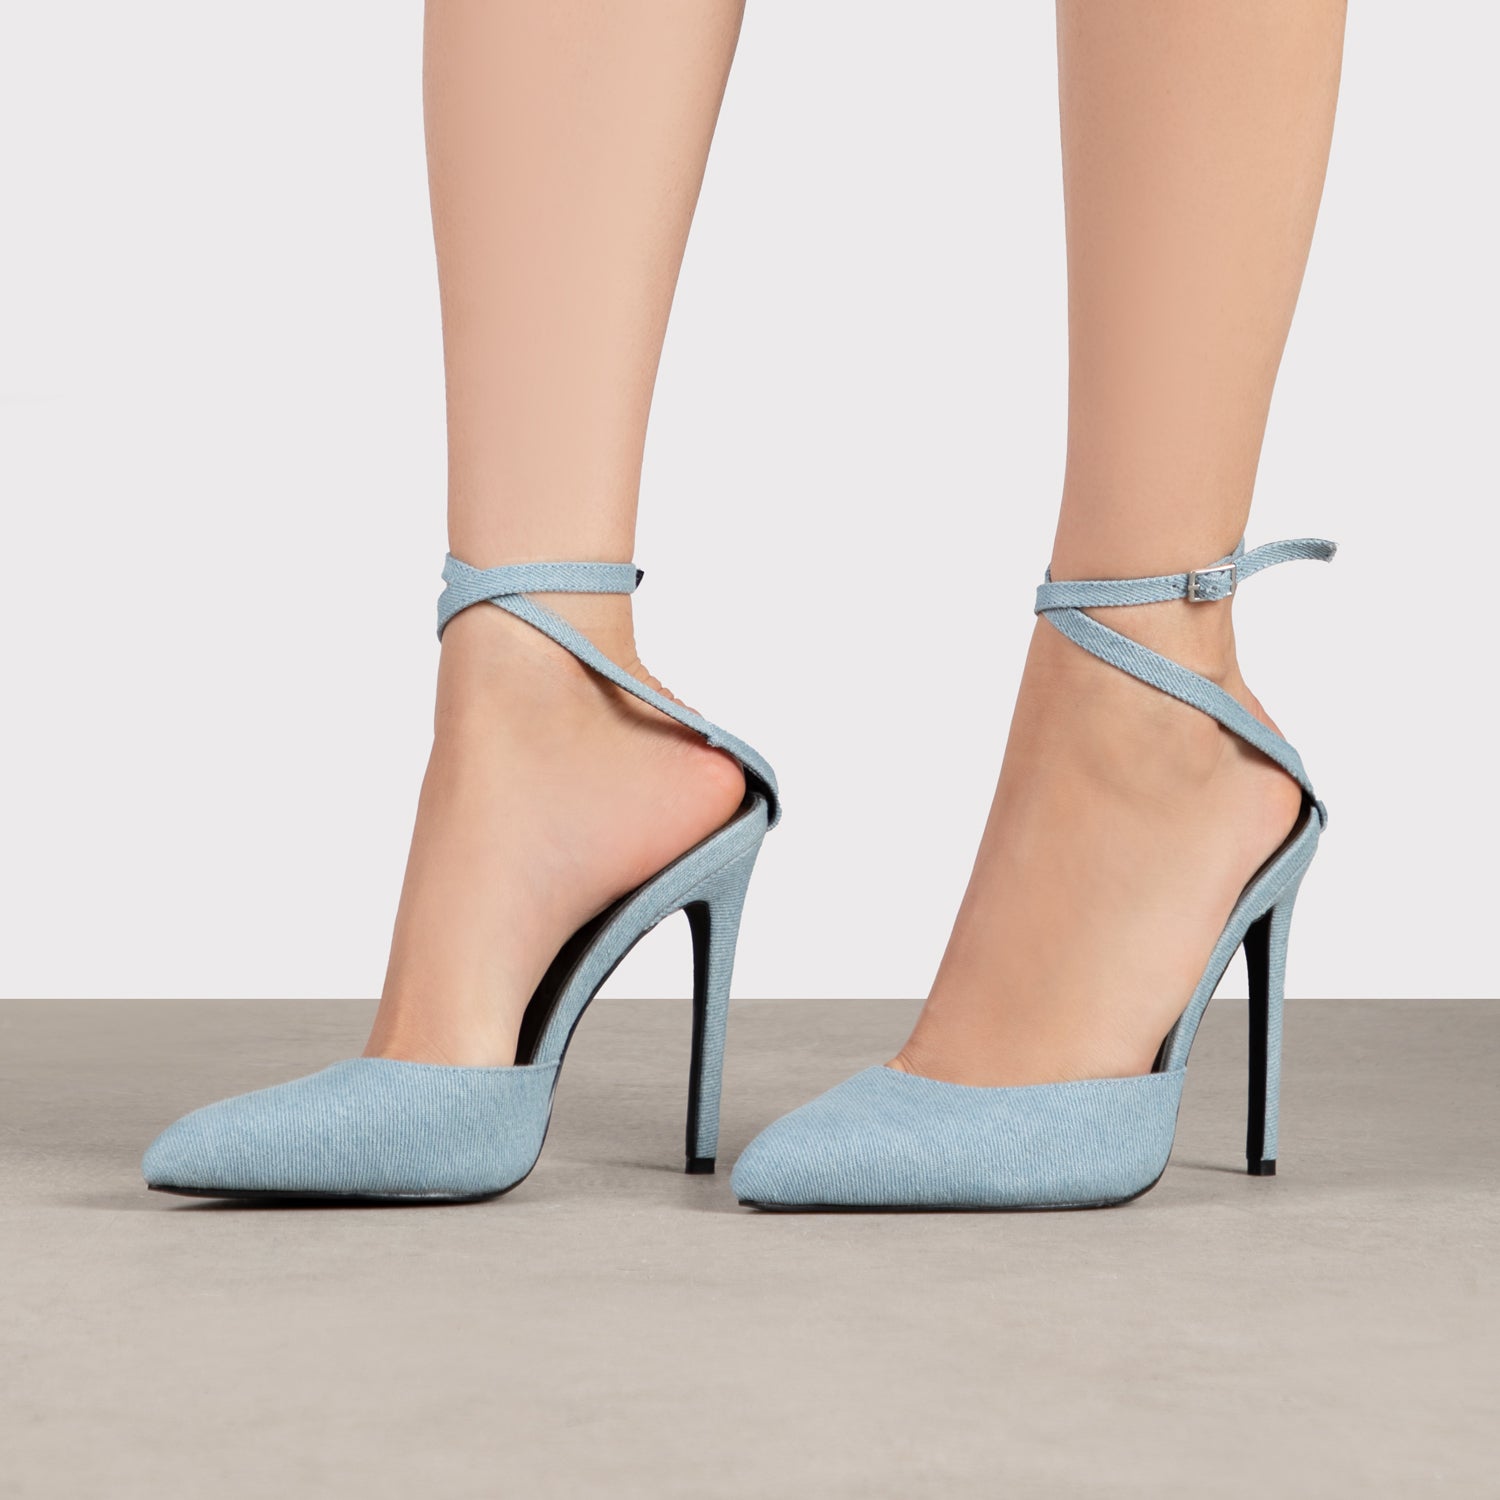 RAID Janiette Heeled Sandals in Blue Denim